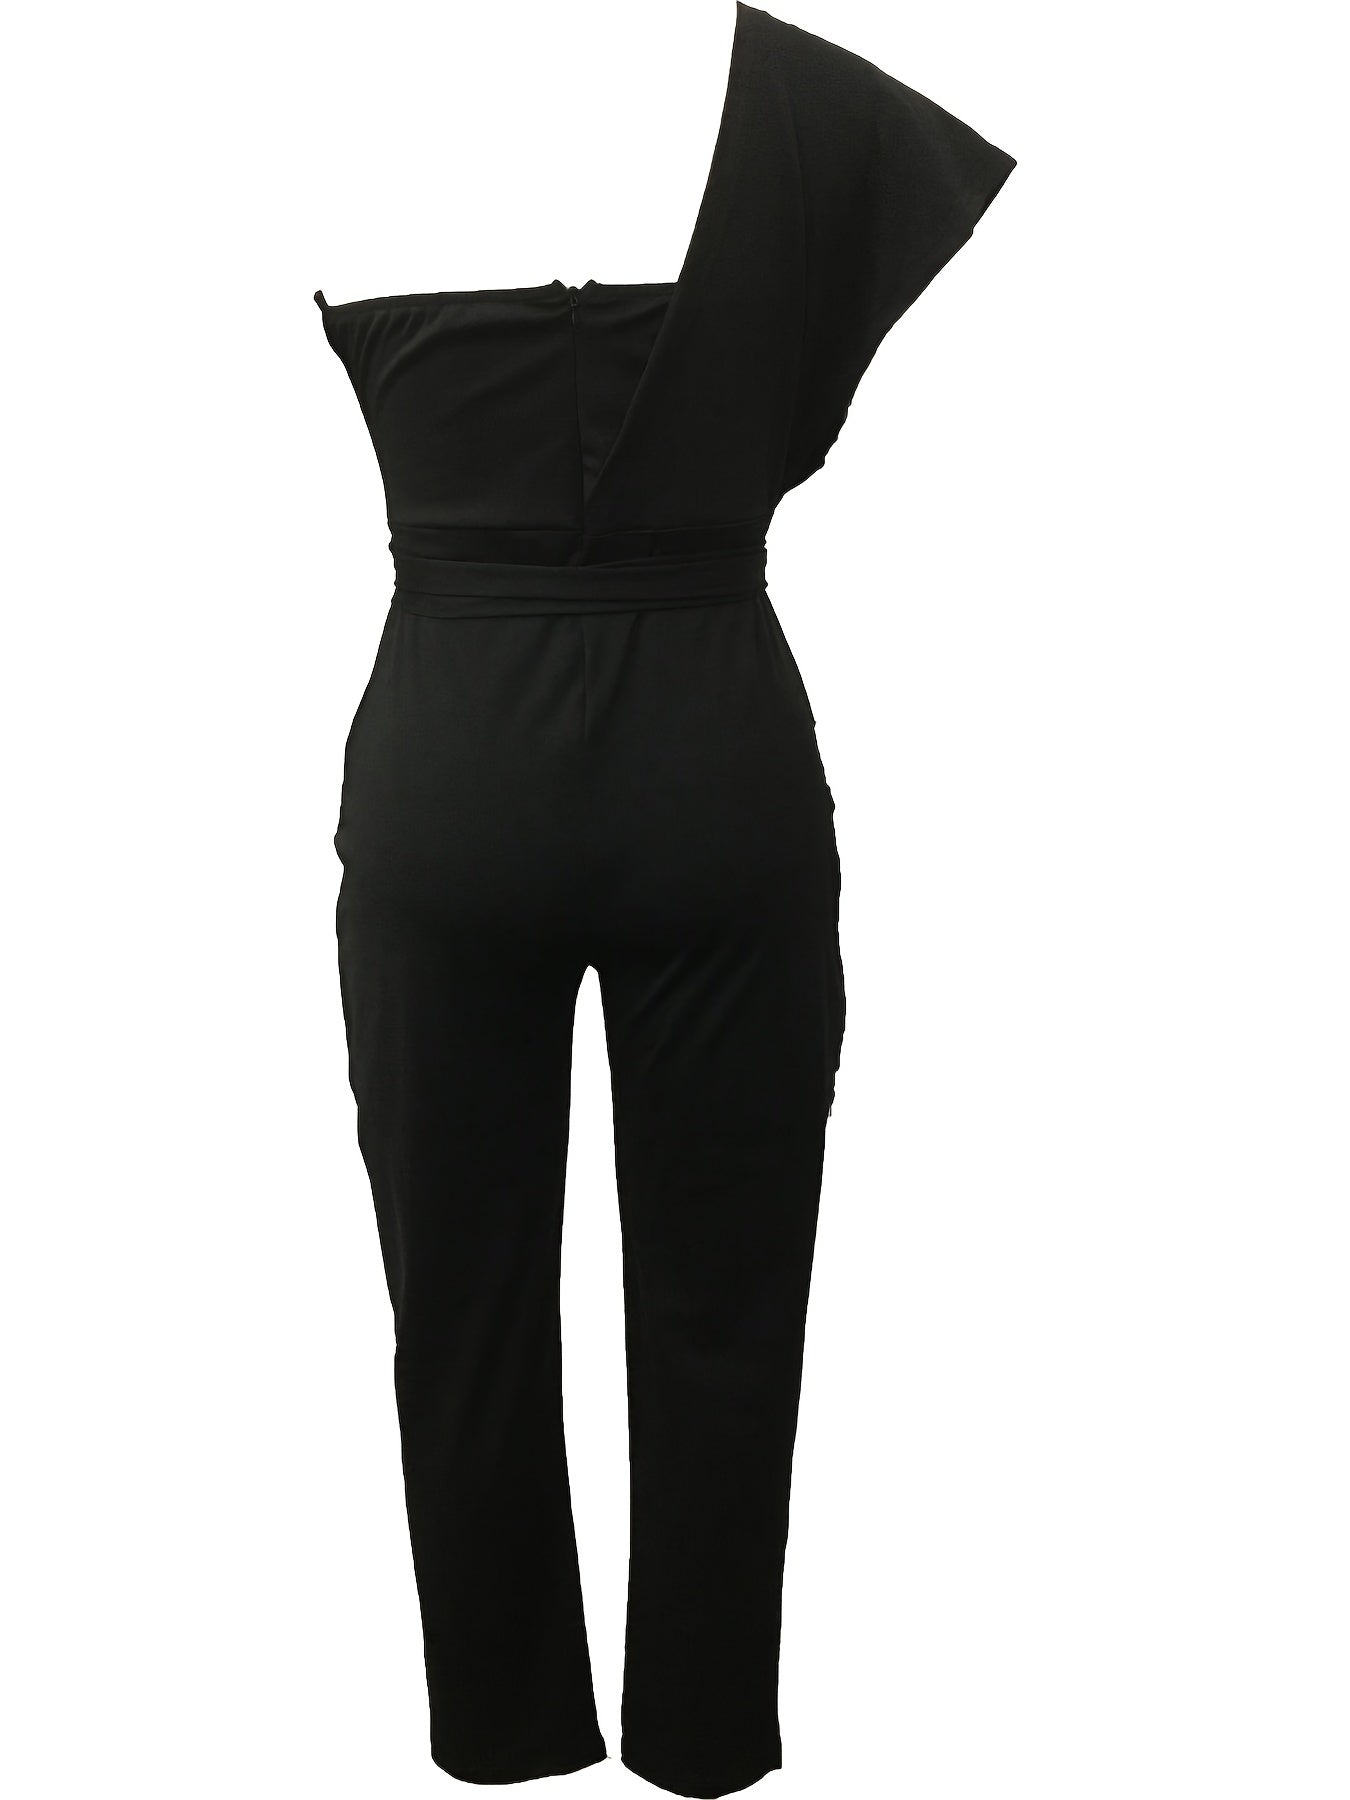 Sequin One Shoulder Jumpsuit, Party Solid Tie Waist Long Length Slim Jumpsuit, Women's Clothing